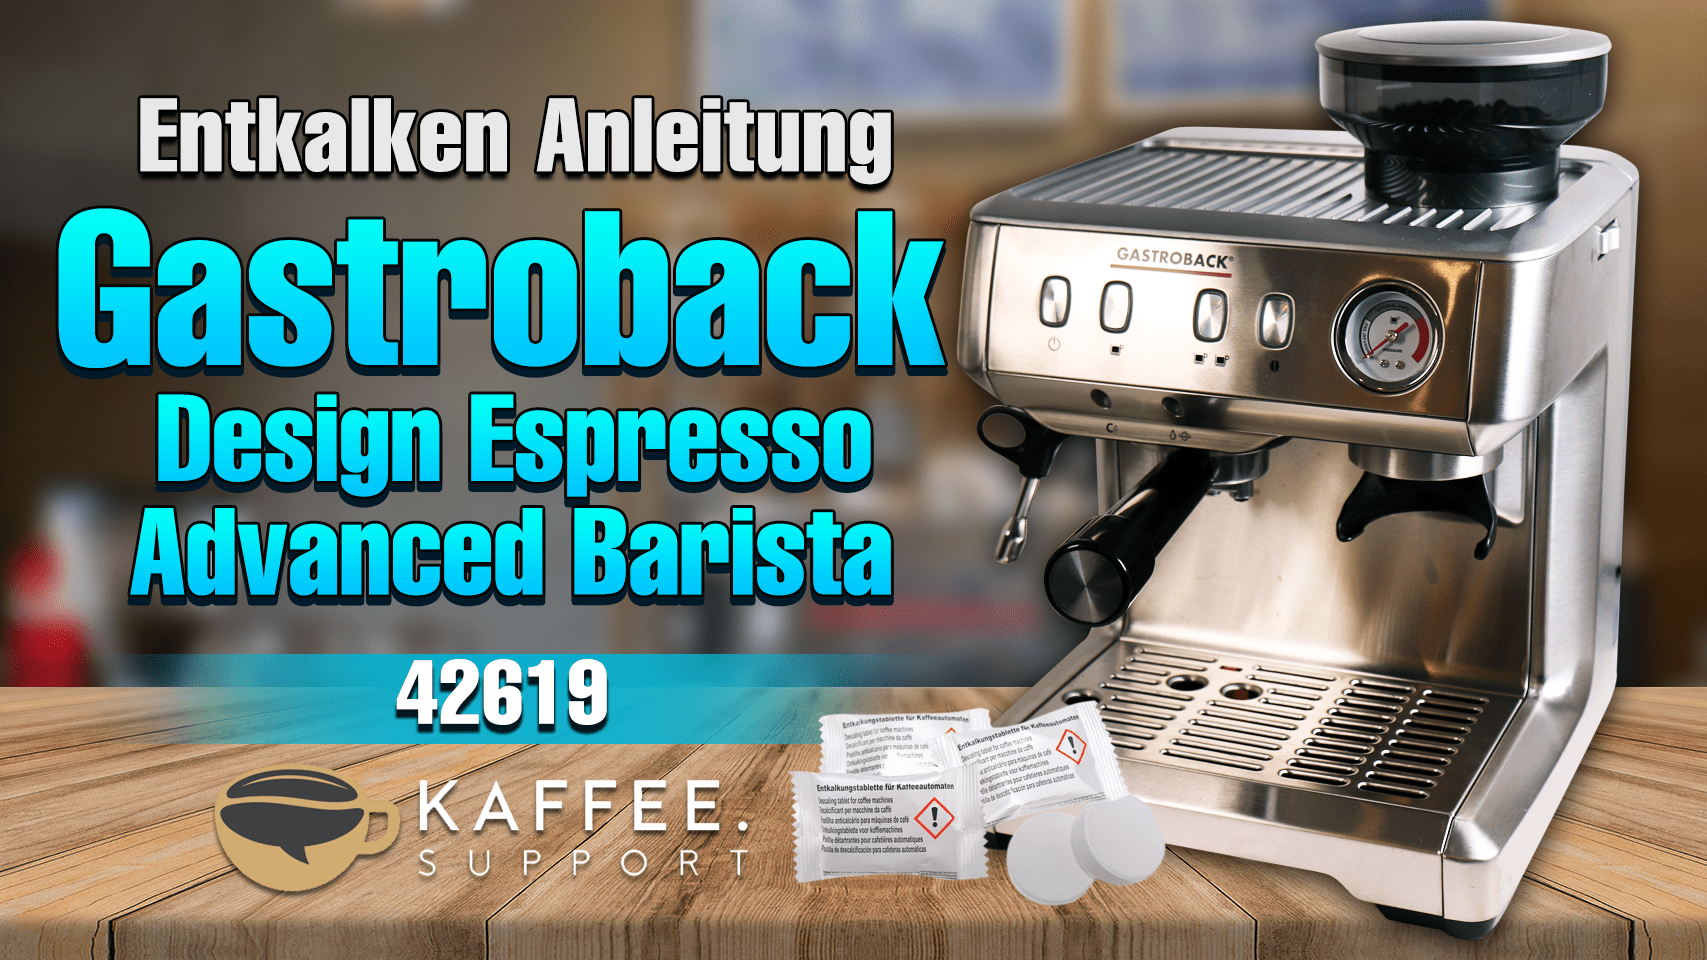 Gastroback 42619 Design Espresso Advanced Barista – Entkalken Anleitung